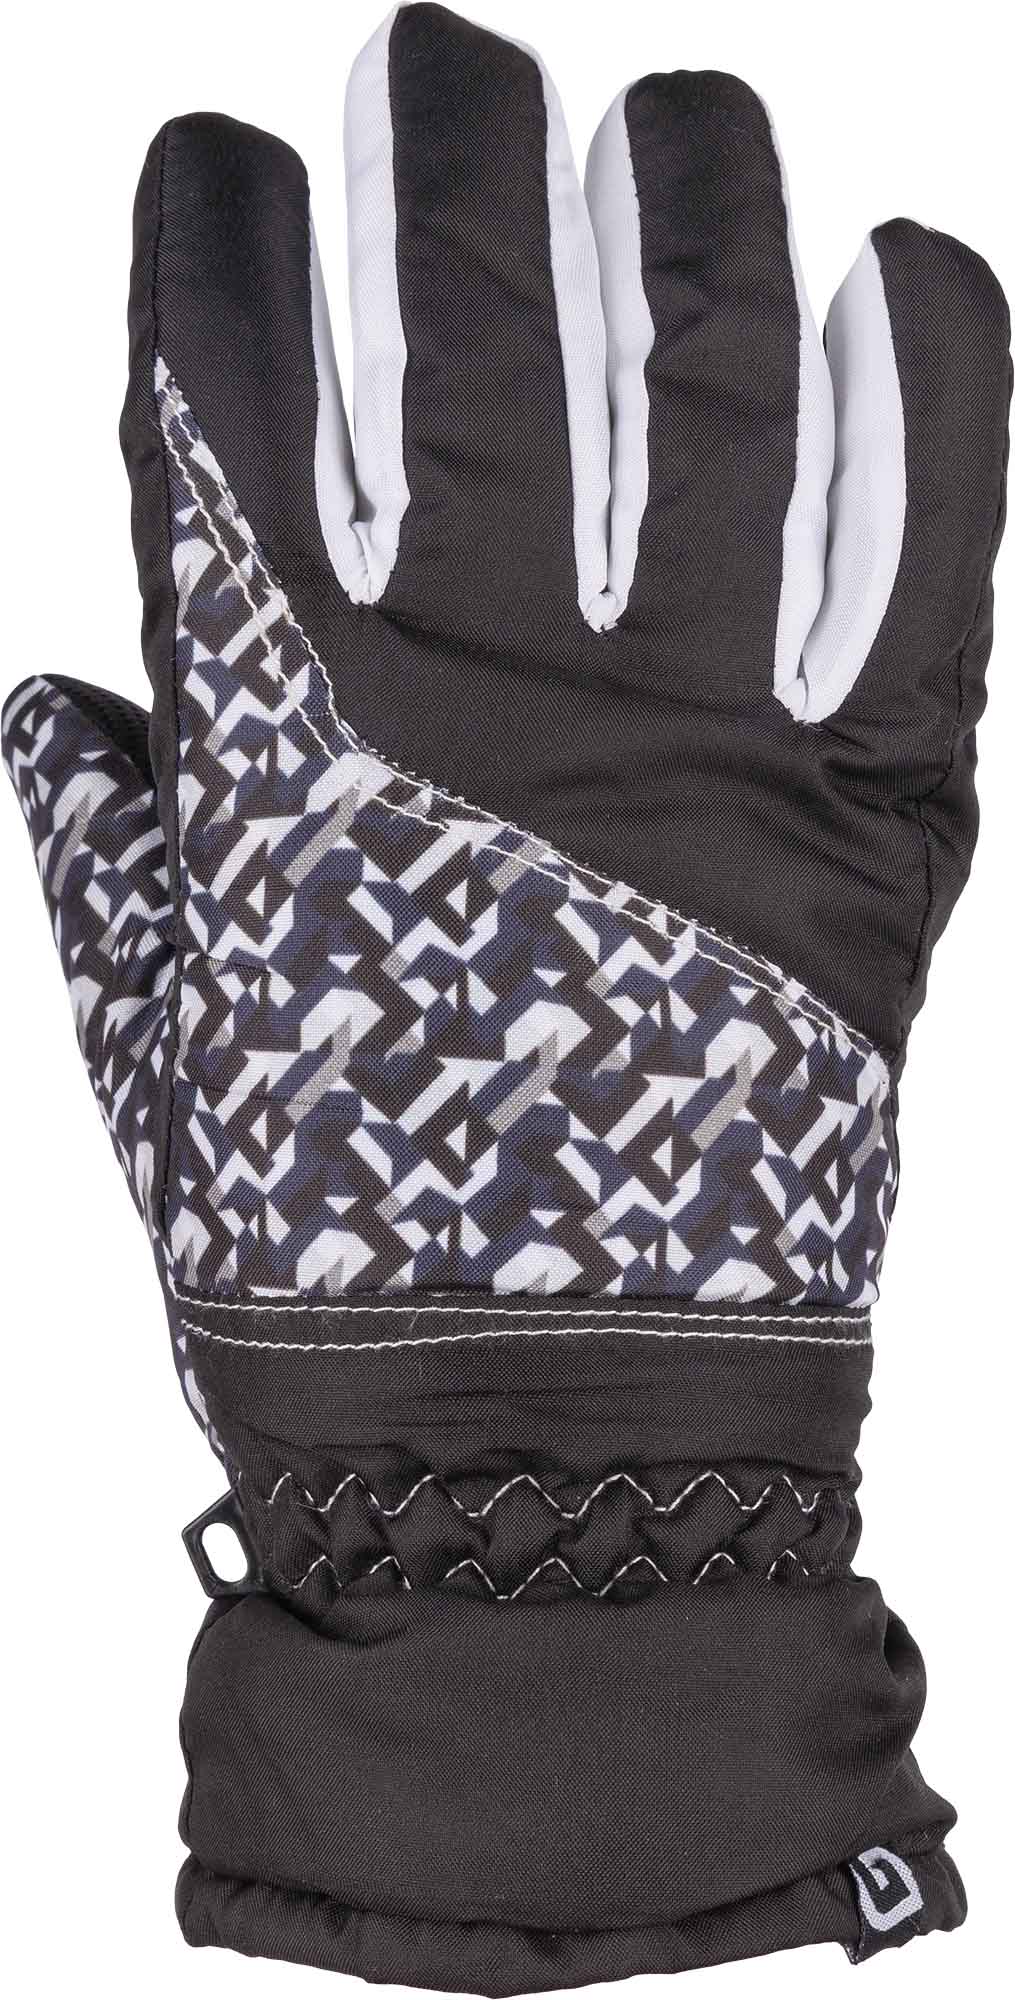 Girls' ski gloves